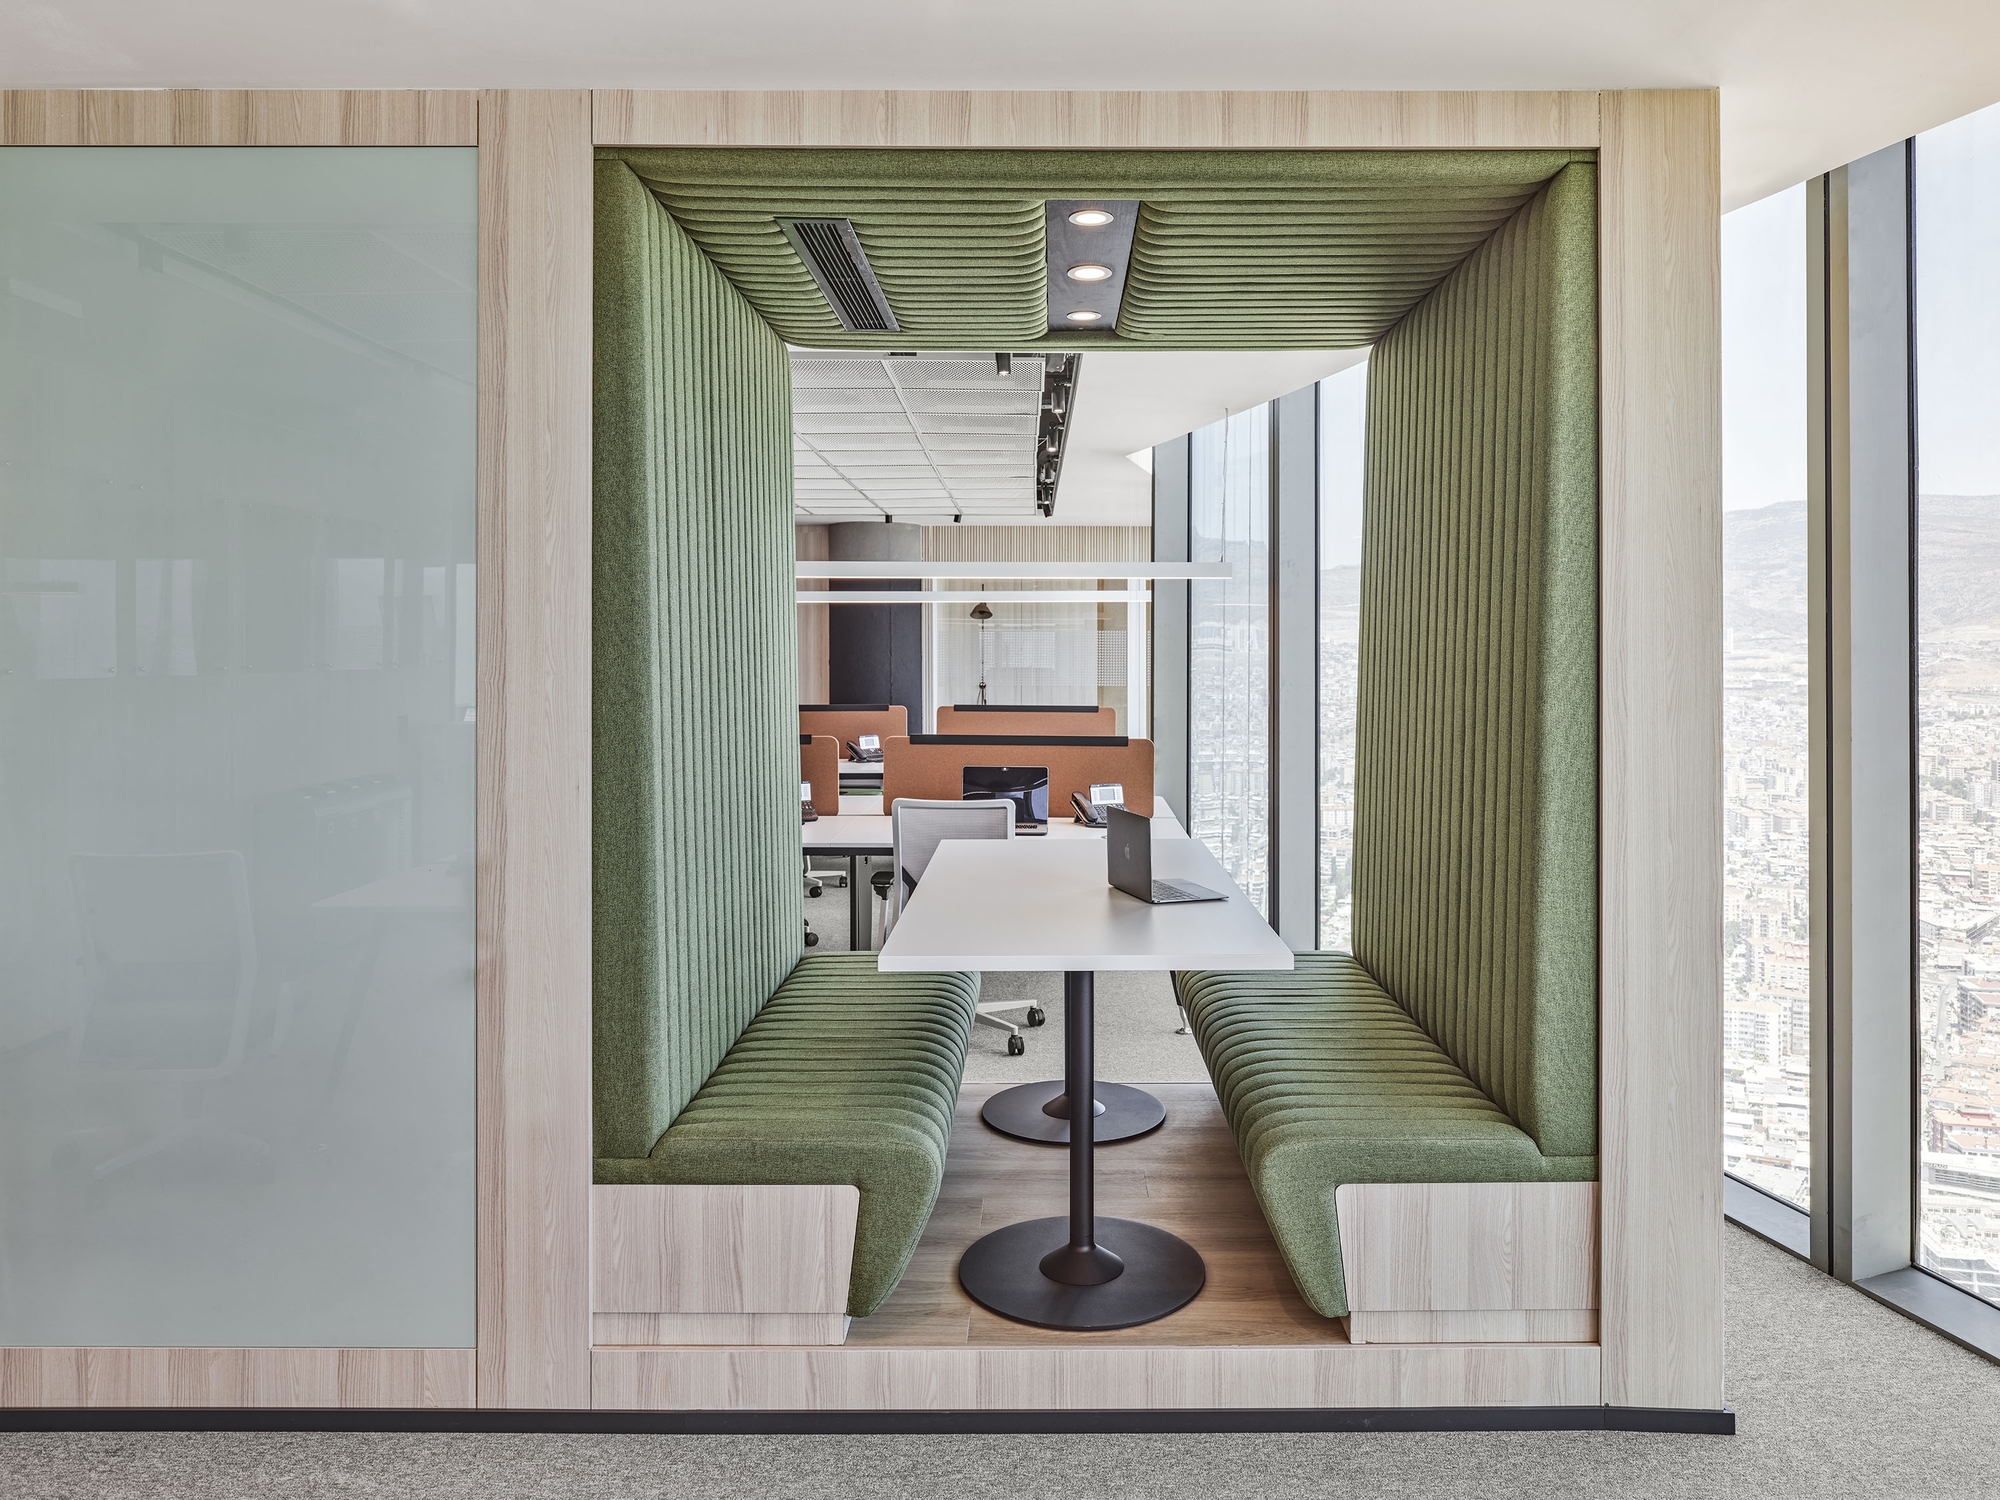 图片[6]|施耐德电气办公室-伊兹密尔|ART-Arrakis | 建筑室内设计的创新与灵感